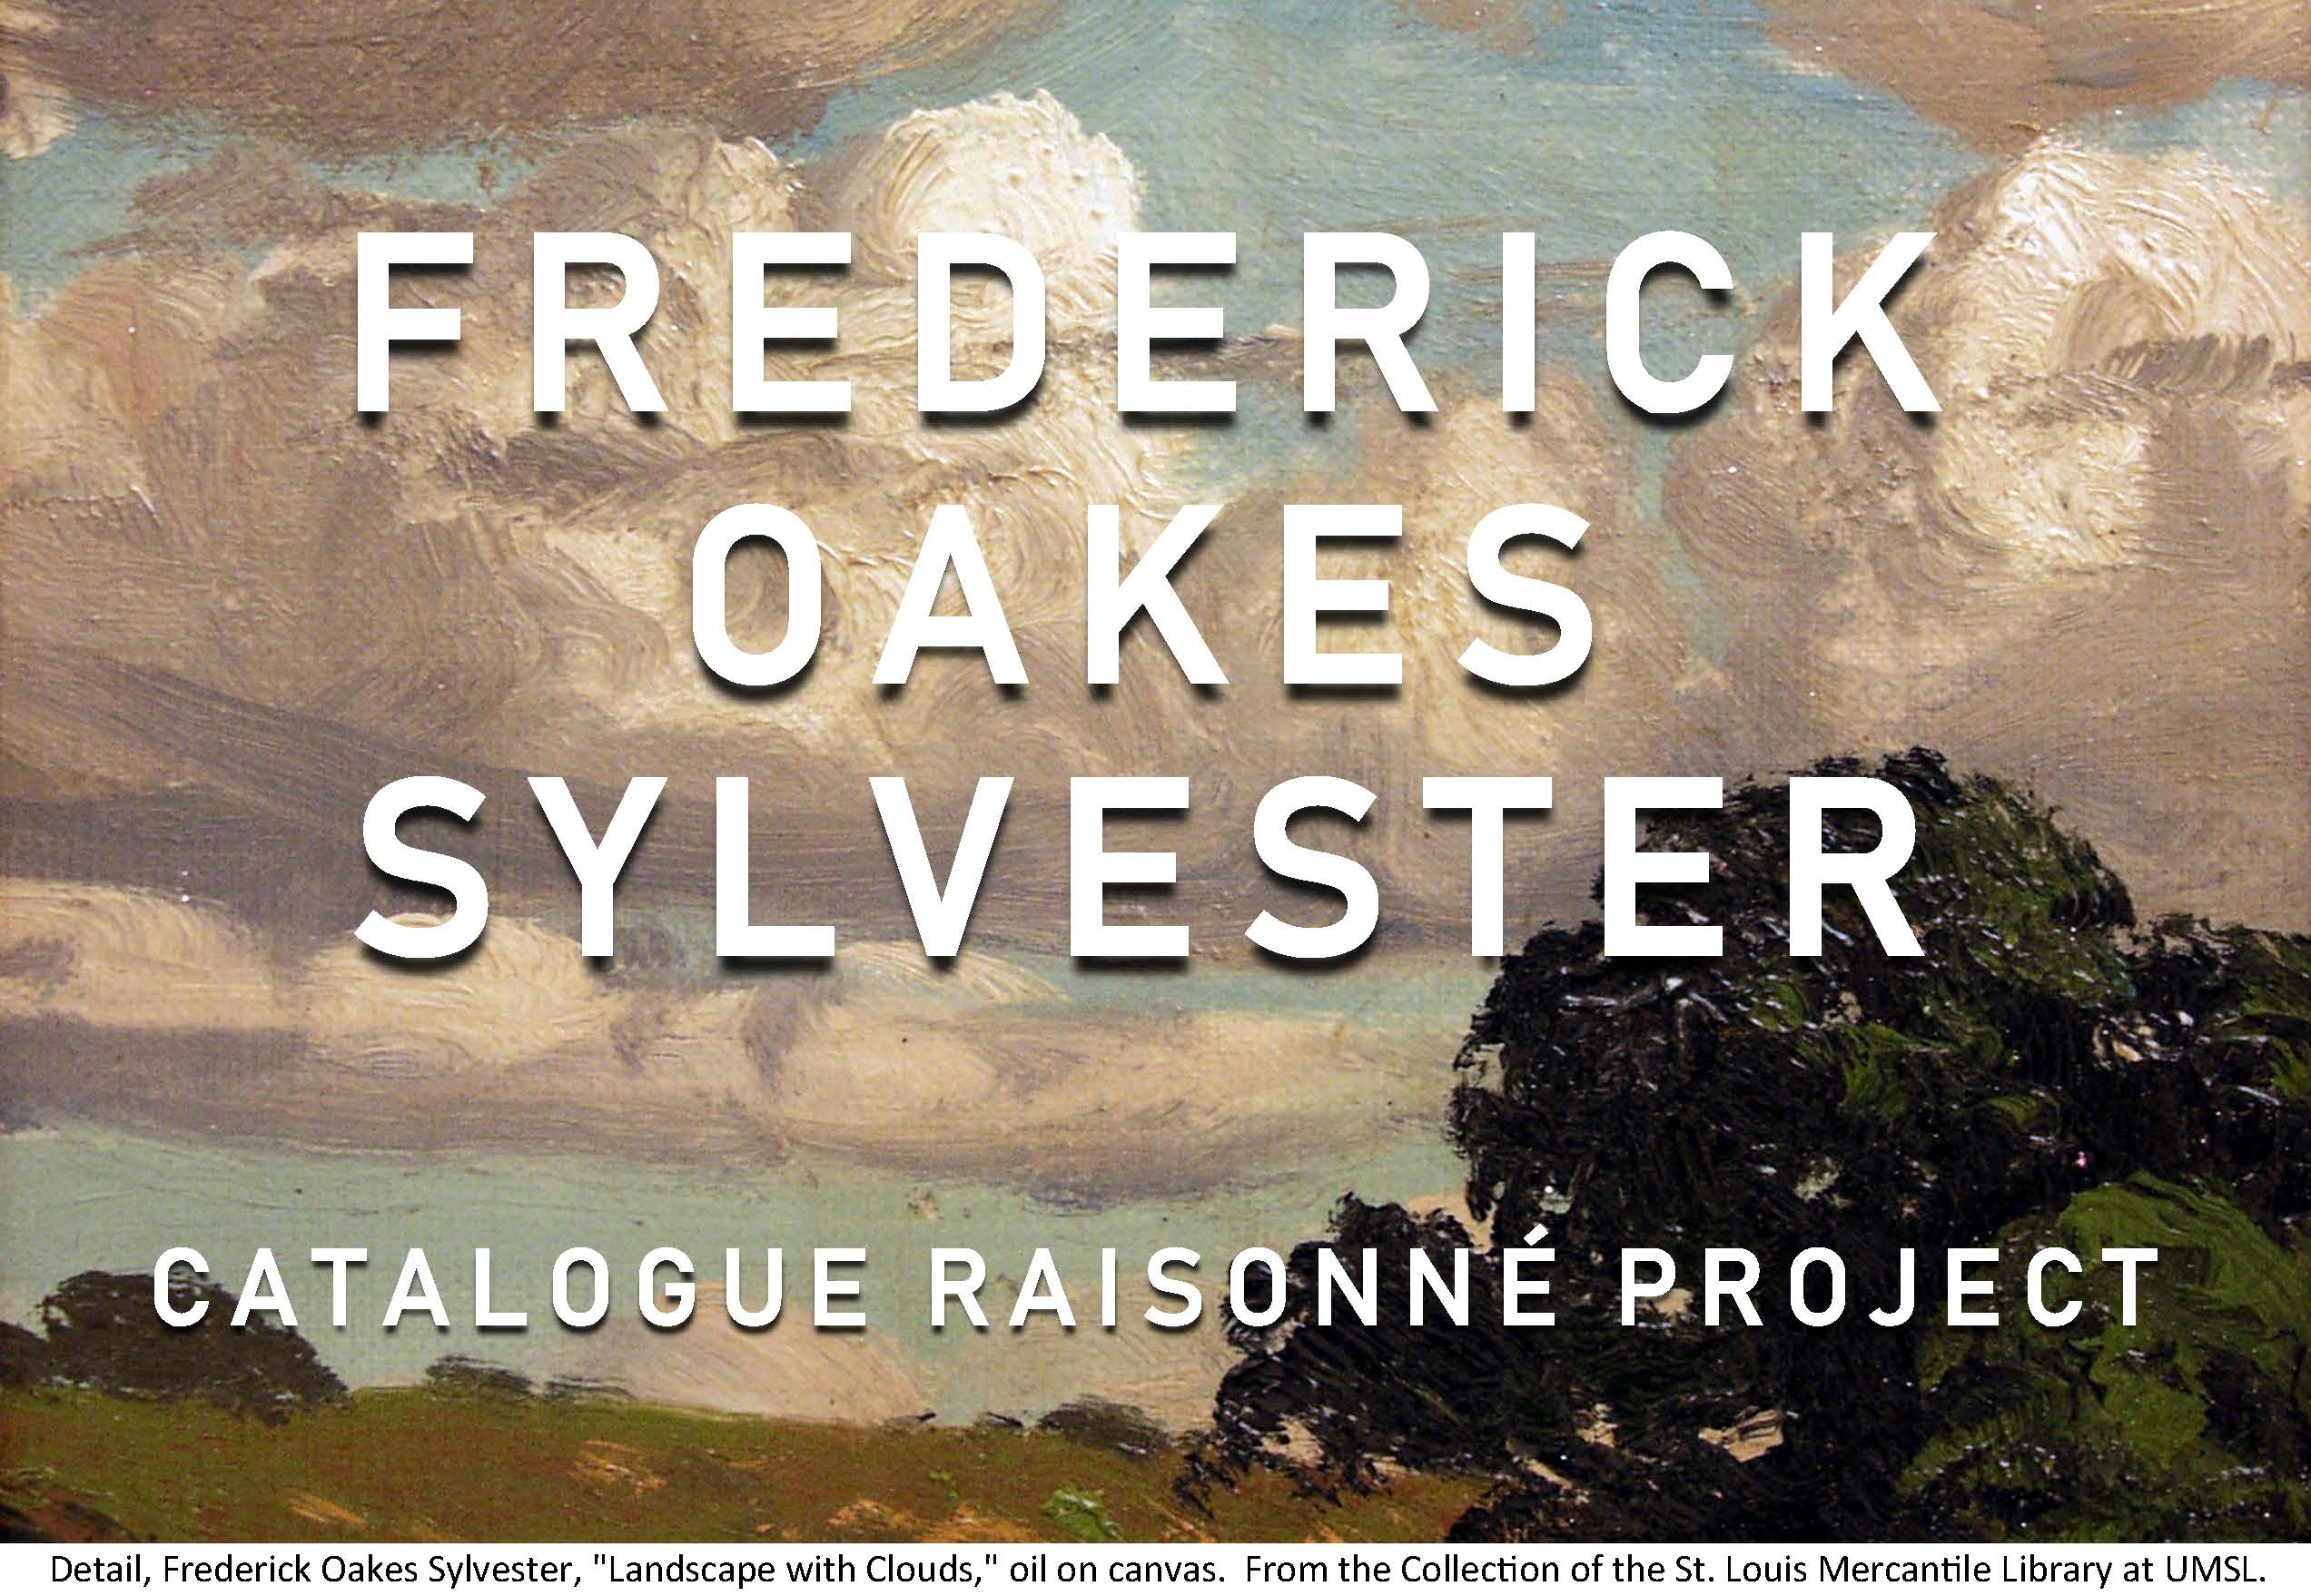 Frederick Oakes Sylvester